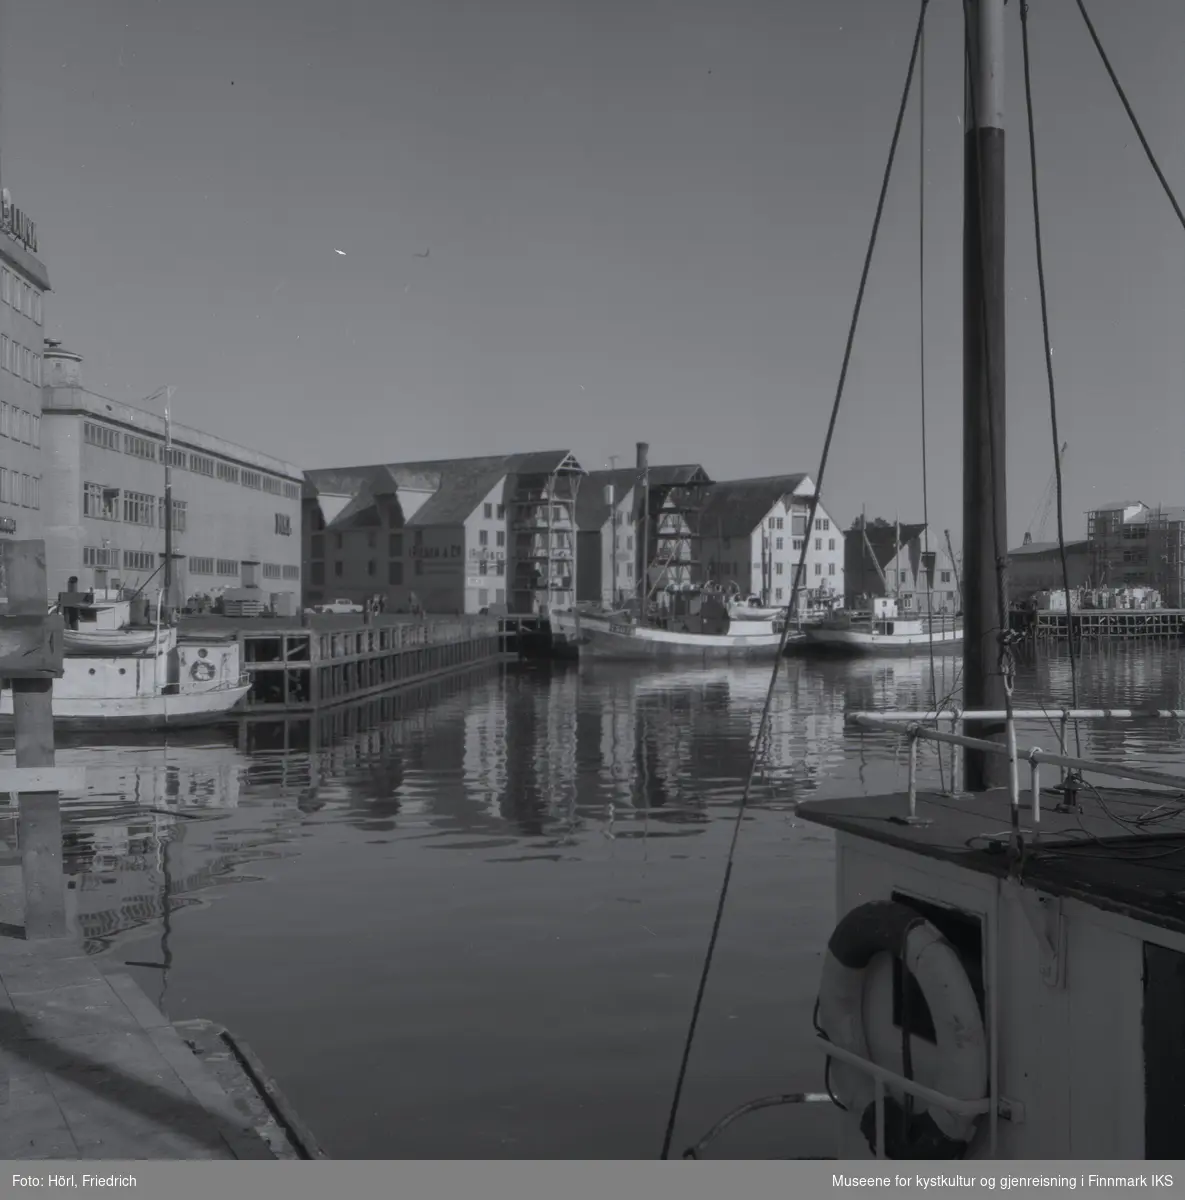 Bildet er tatt i Tromsø havn der fiskebåter ligger til kais. I bakgrunnen er det pakkhus og industribygg. På et av bygningene står det "Rieber & Co."